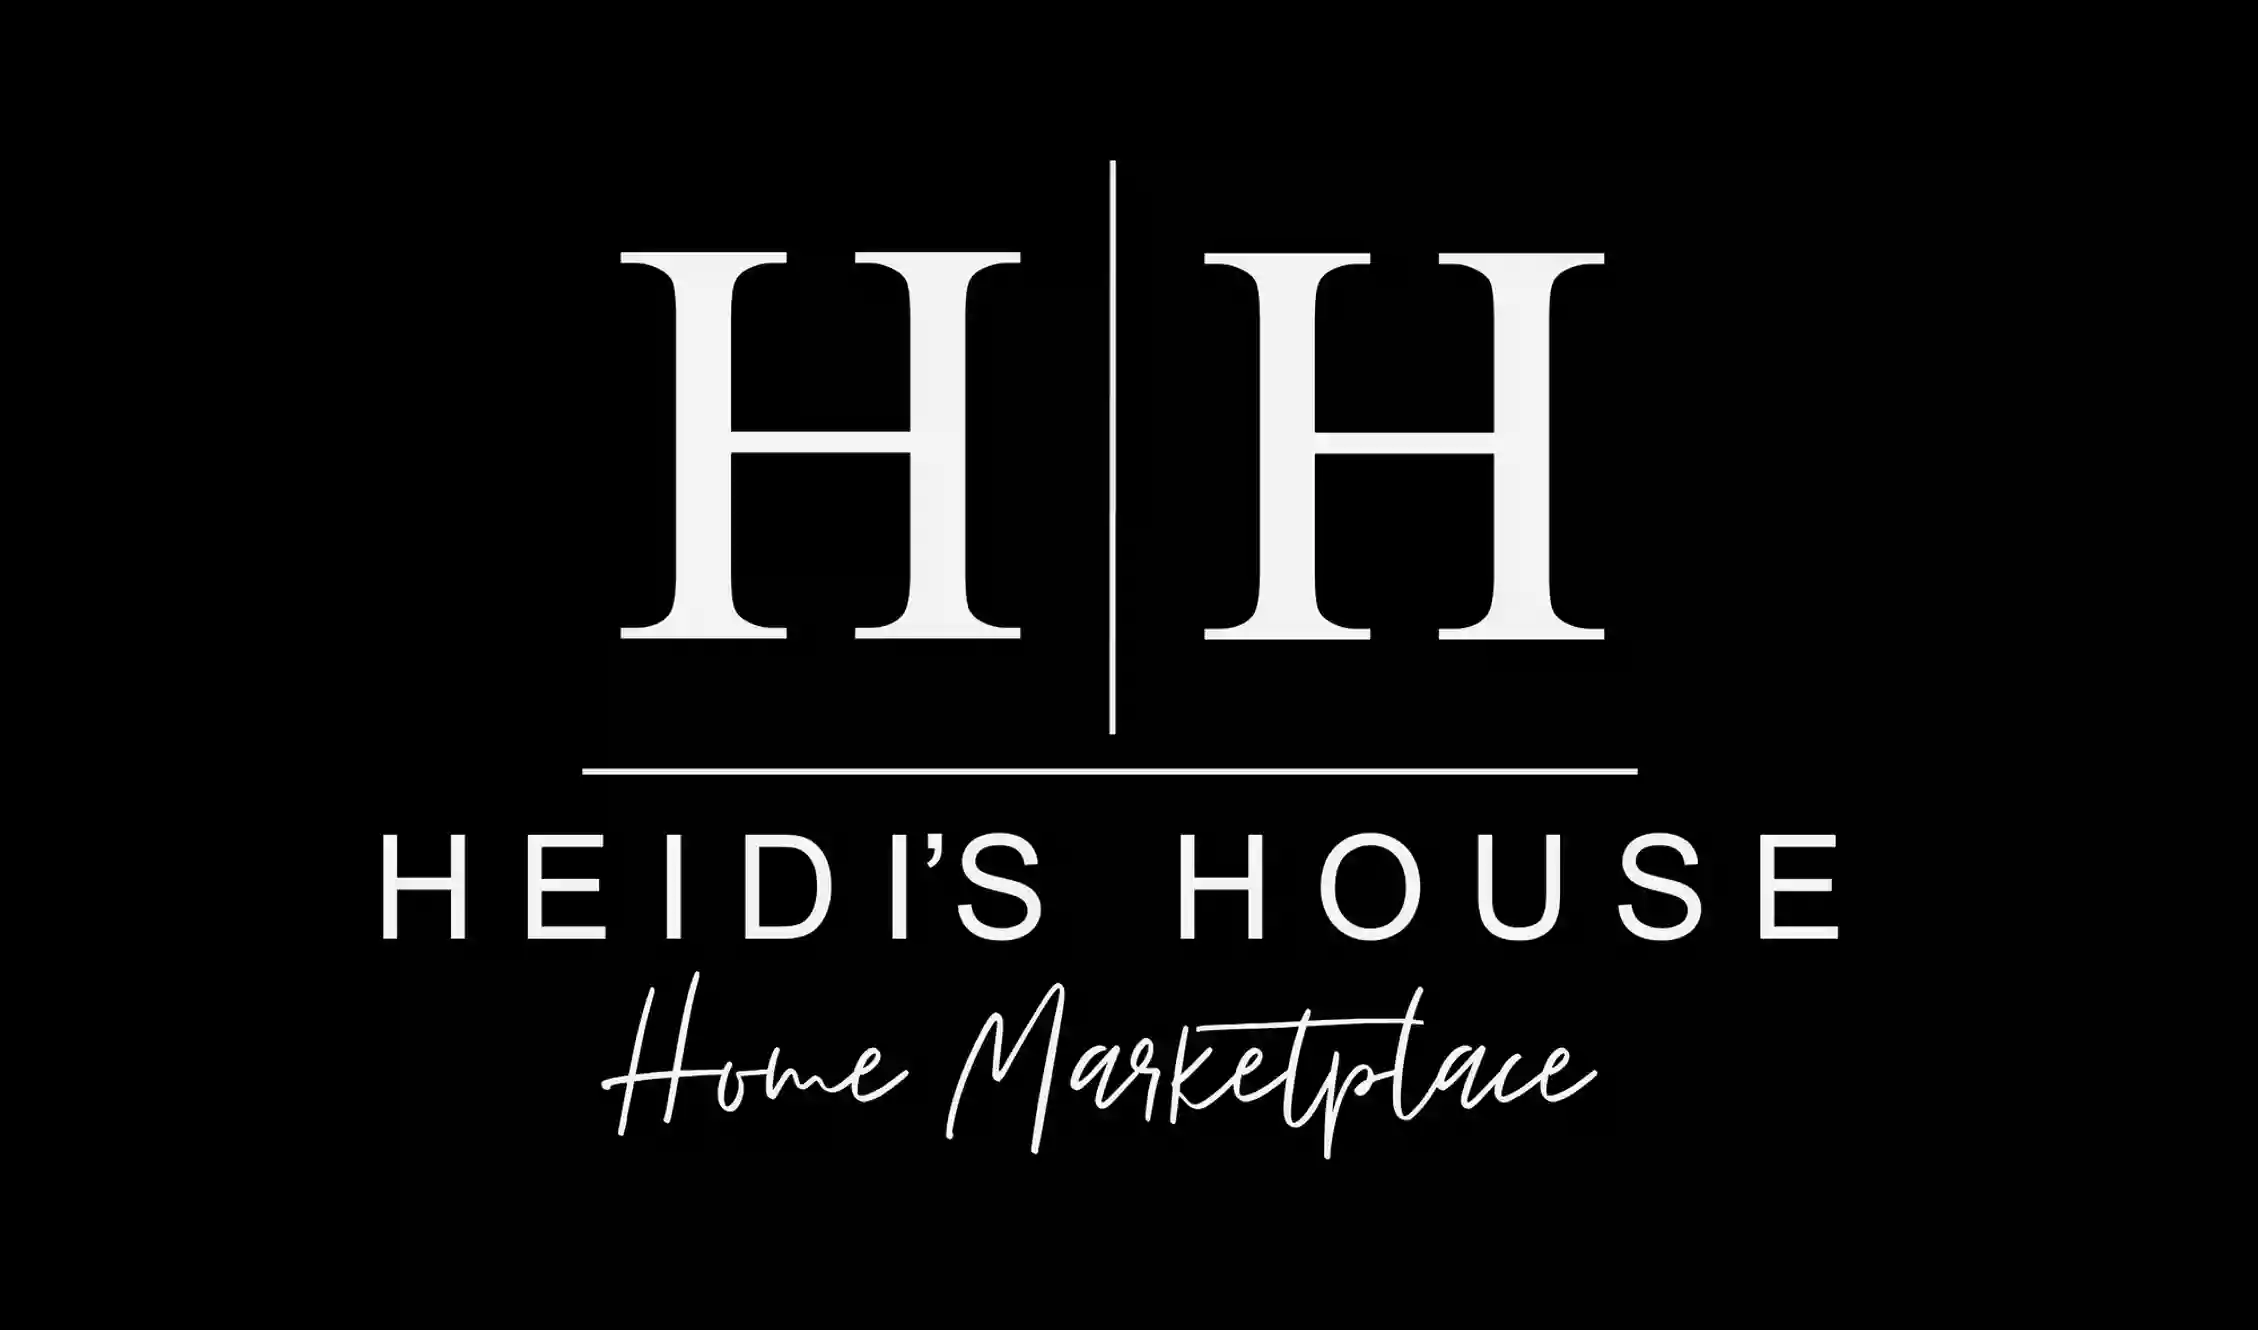 Heidi's House